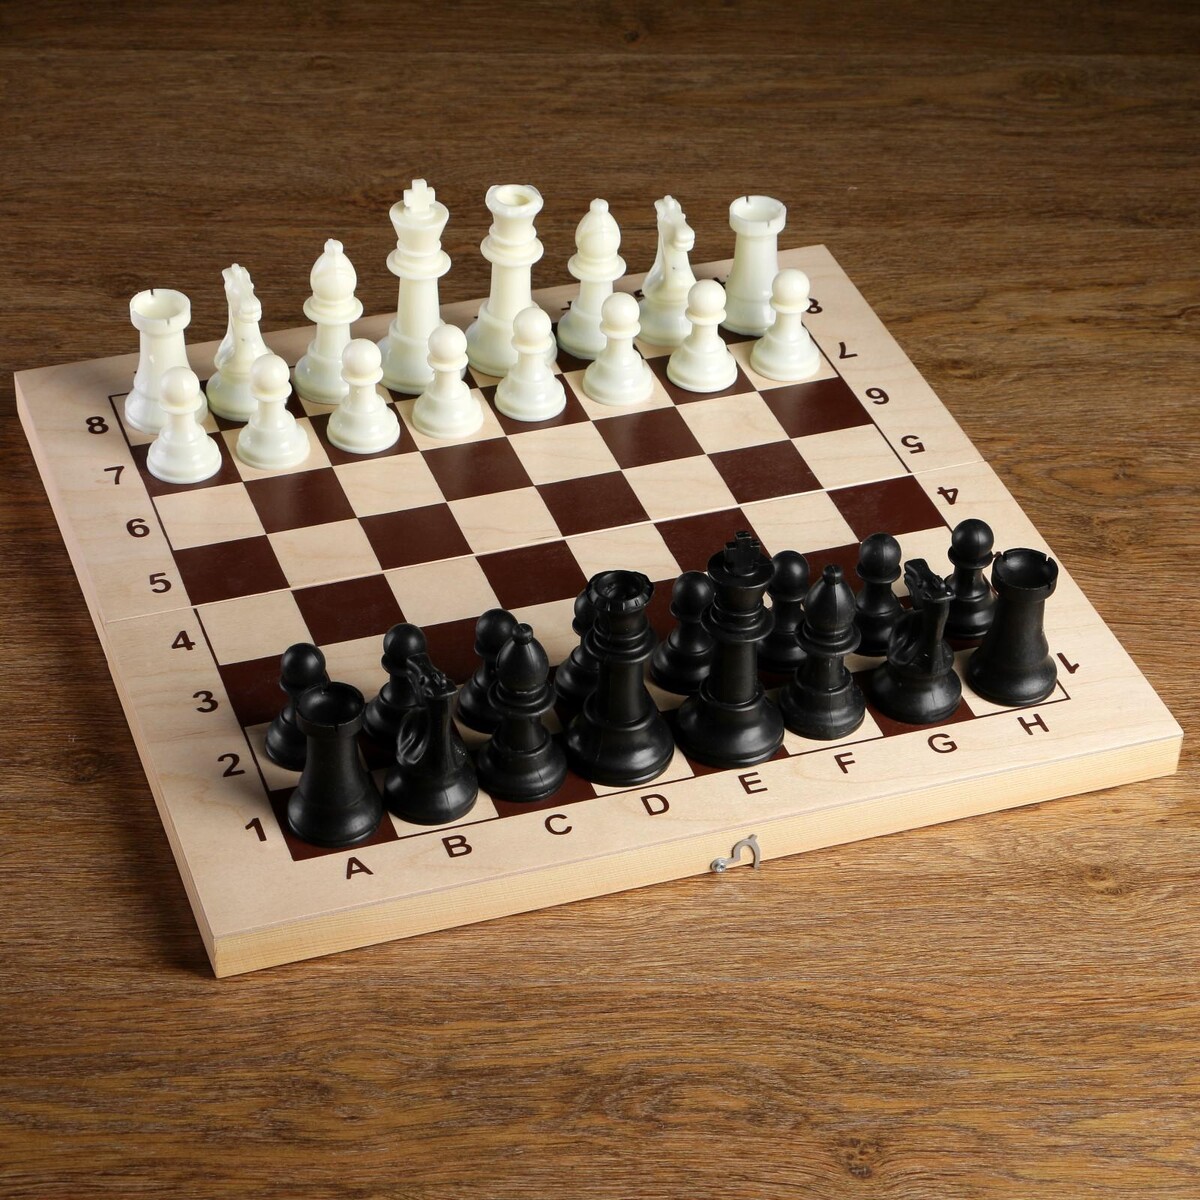 Шахматные фигуры, пластик, король h-10.5 см, пешка h-5 см король крыс